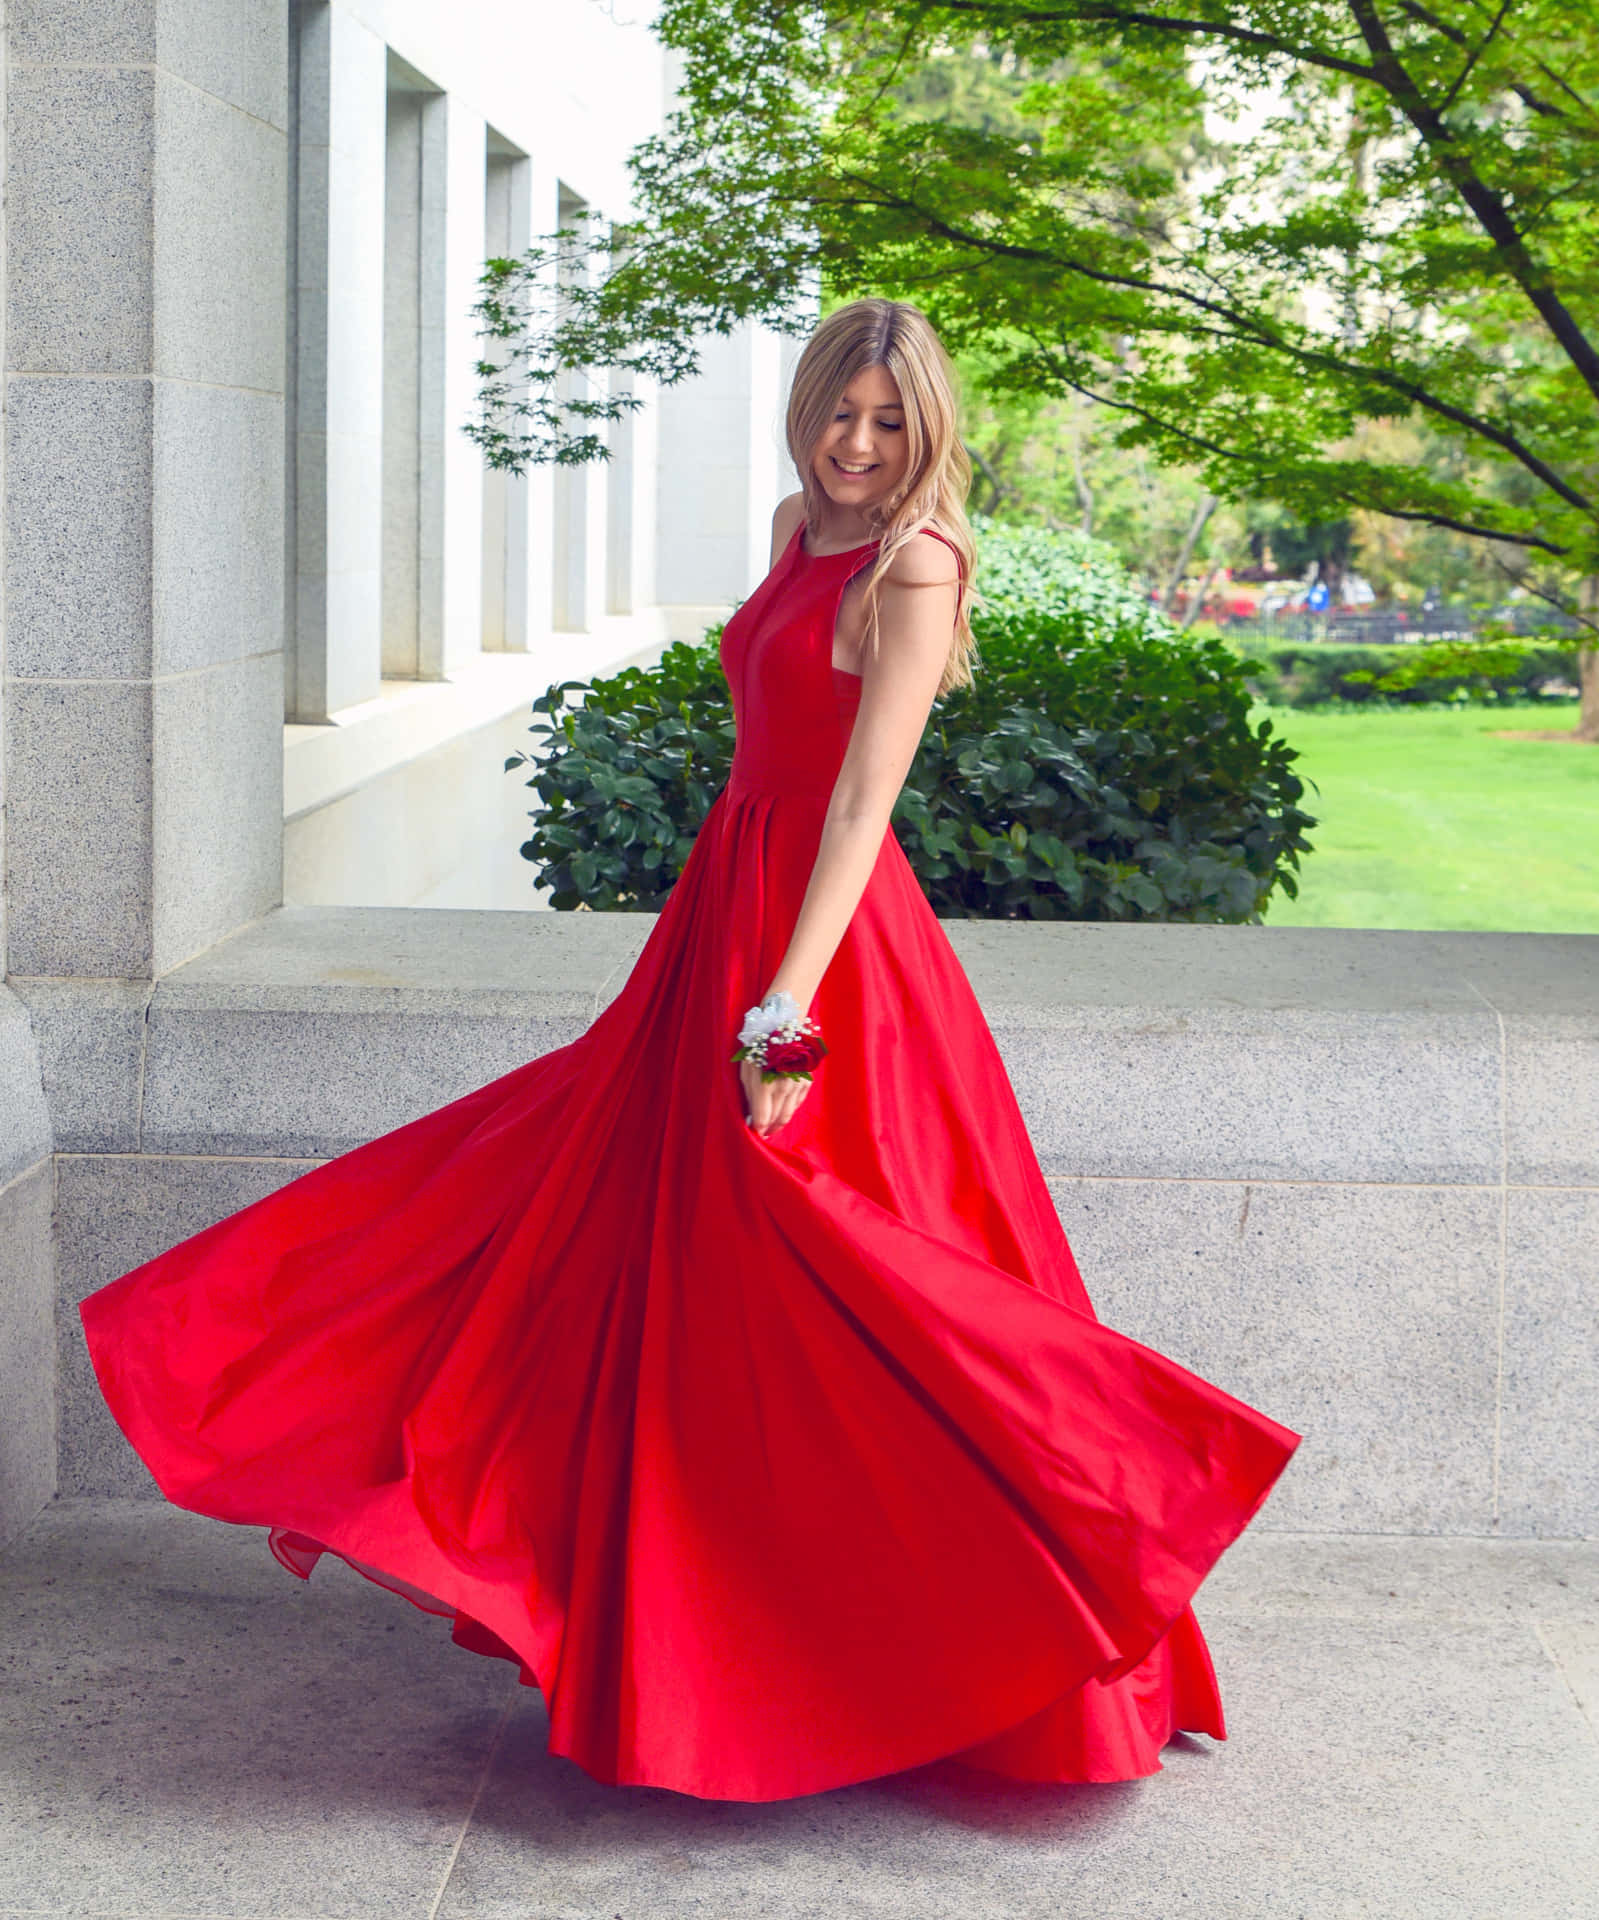 Einefrau In Einem Roten Kleid